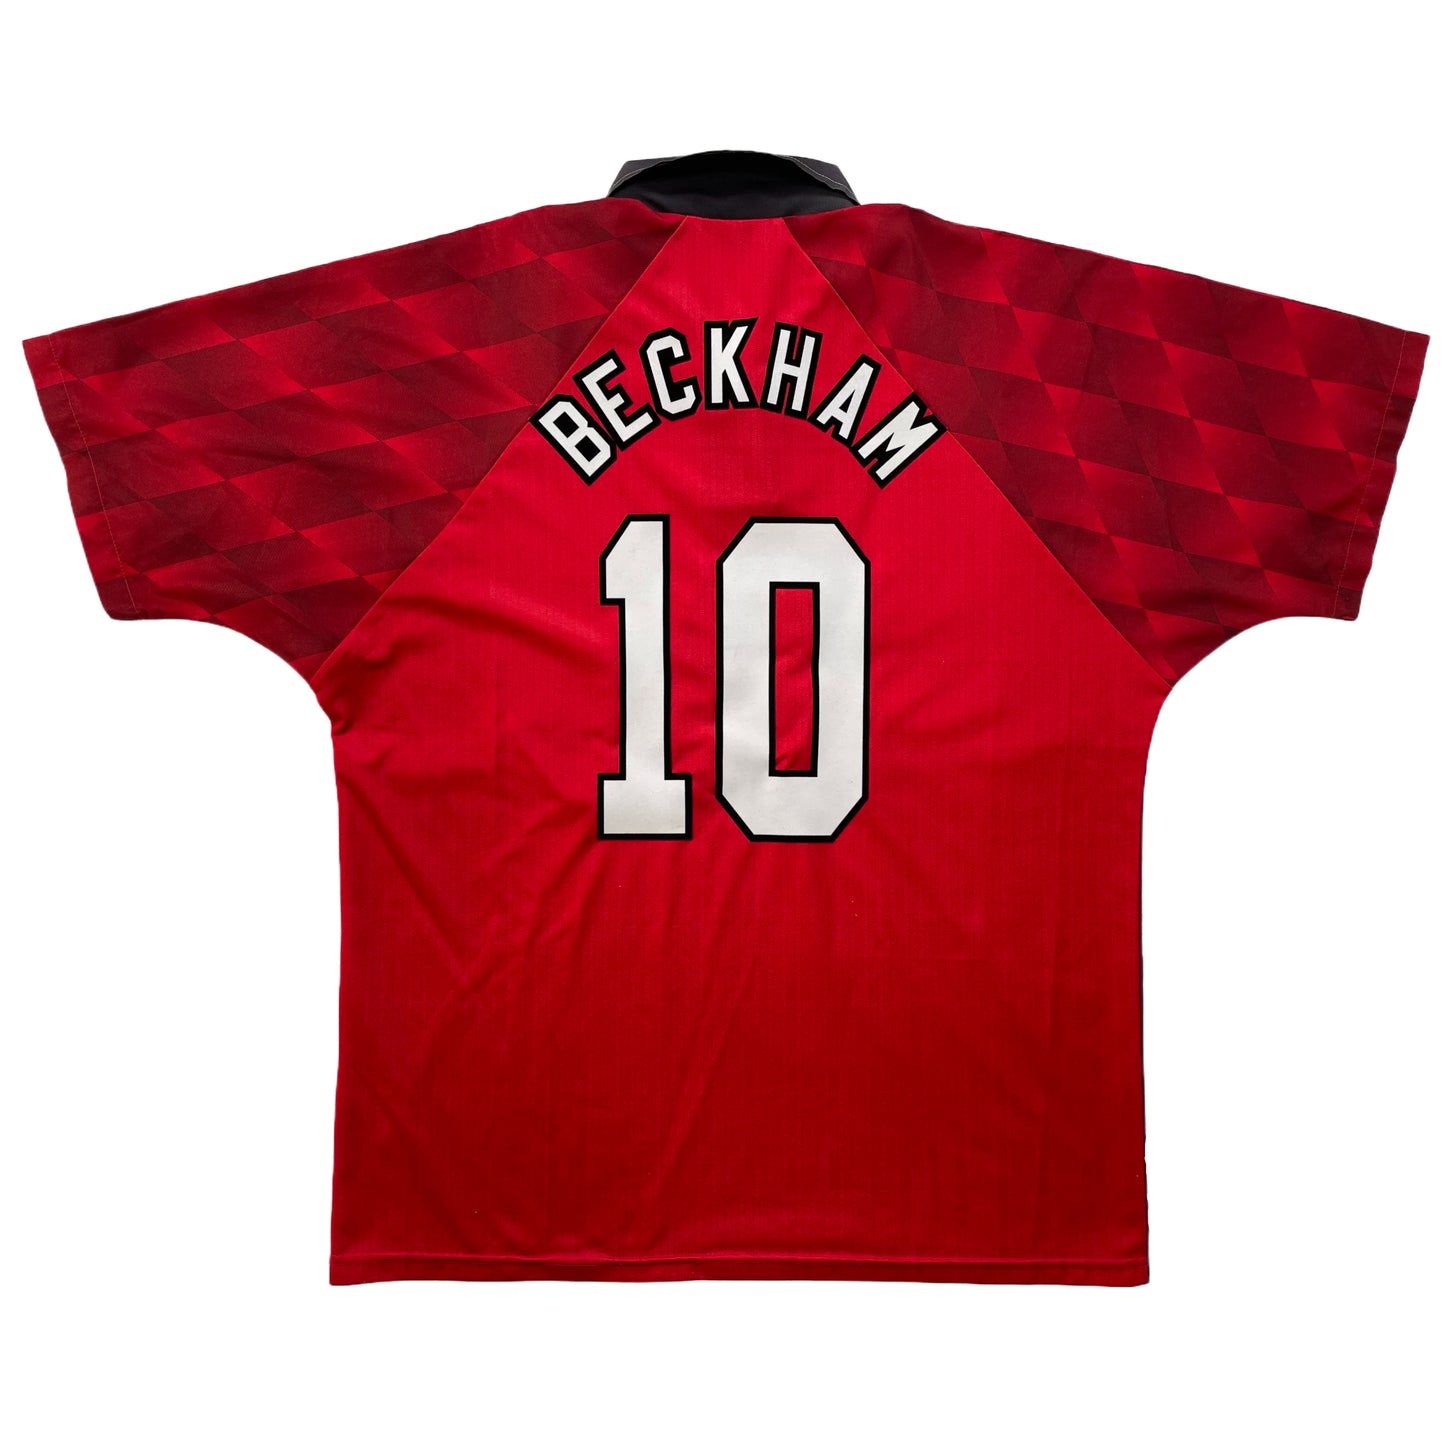 1996-1997 Manchester United FC home shirt #10 Beckham (XL)